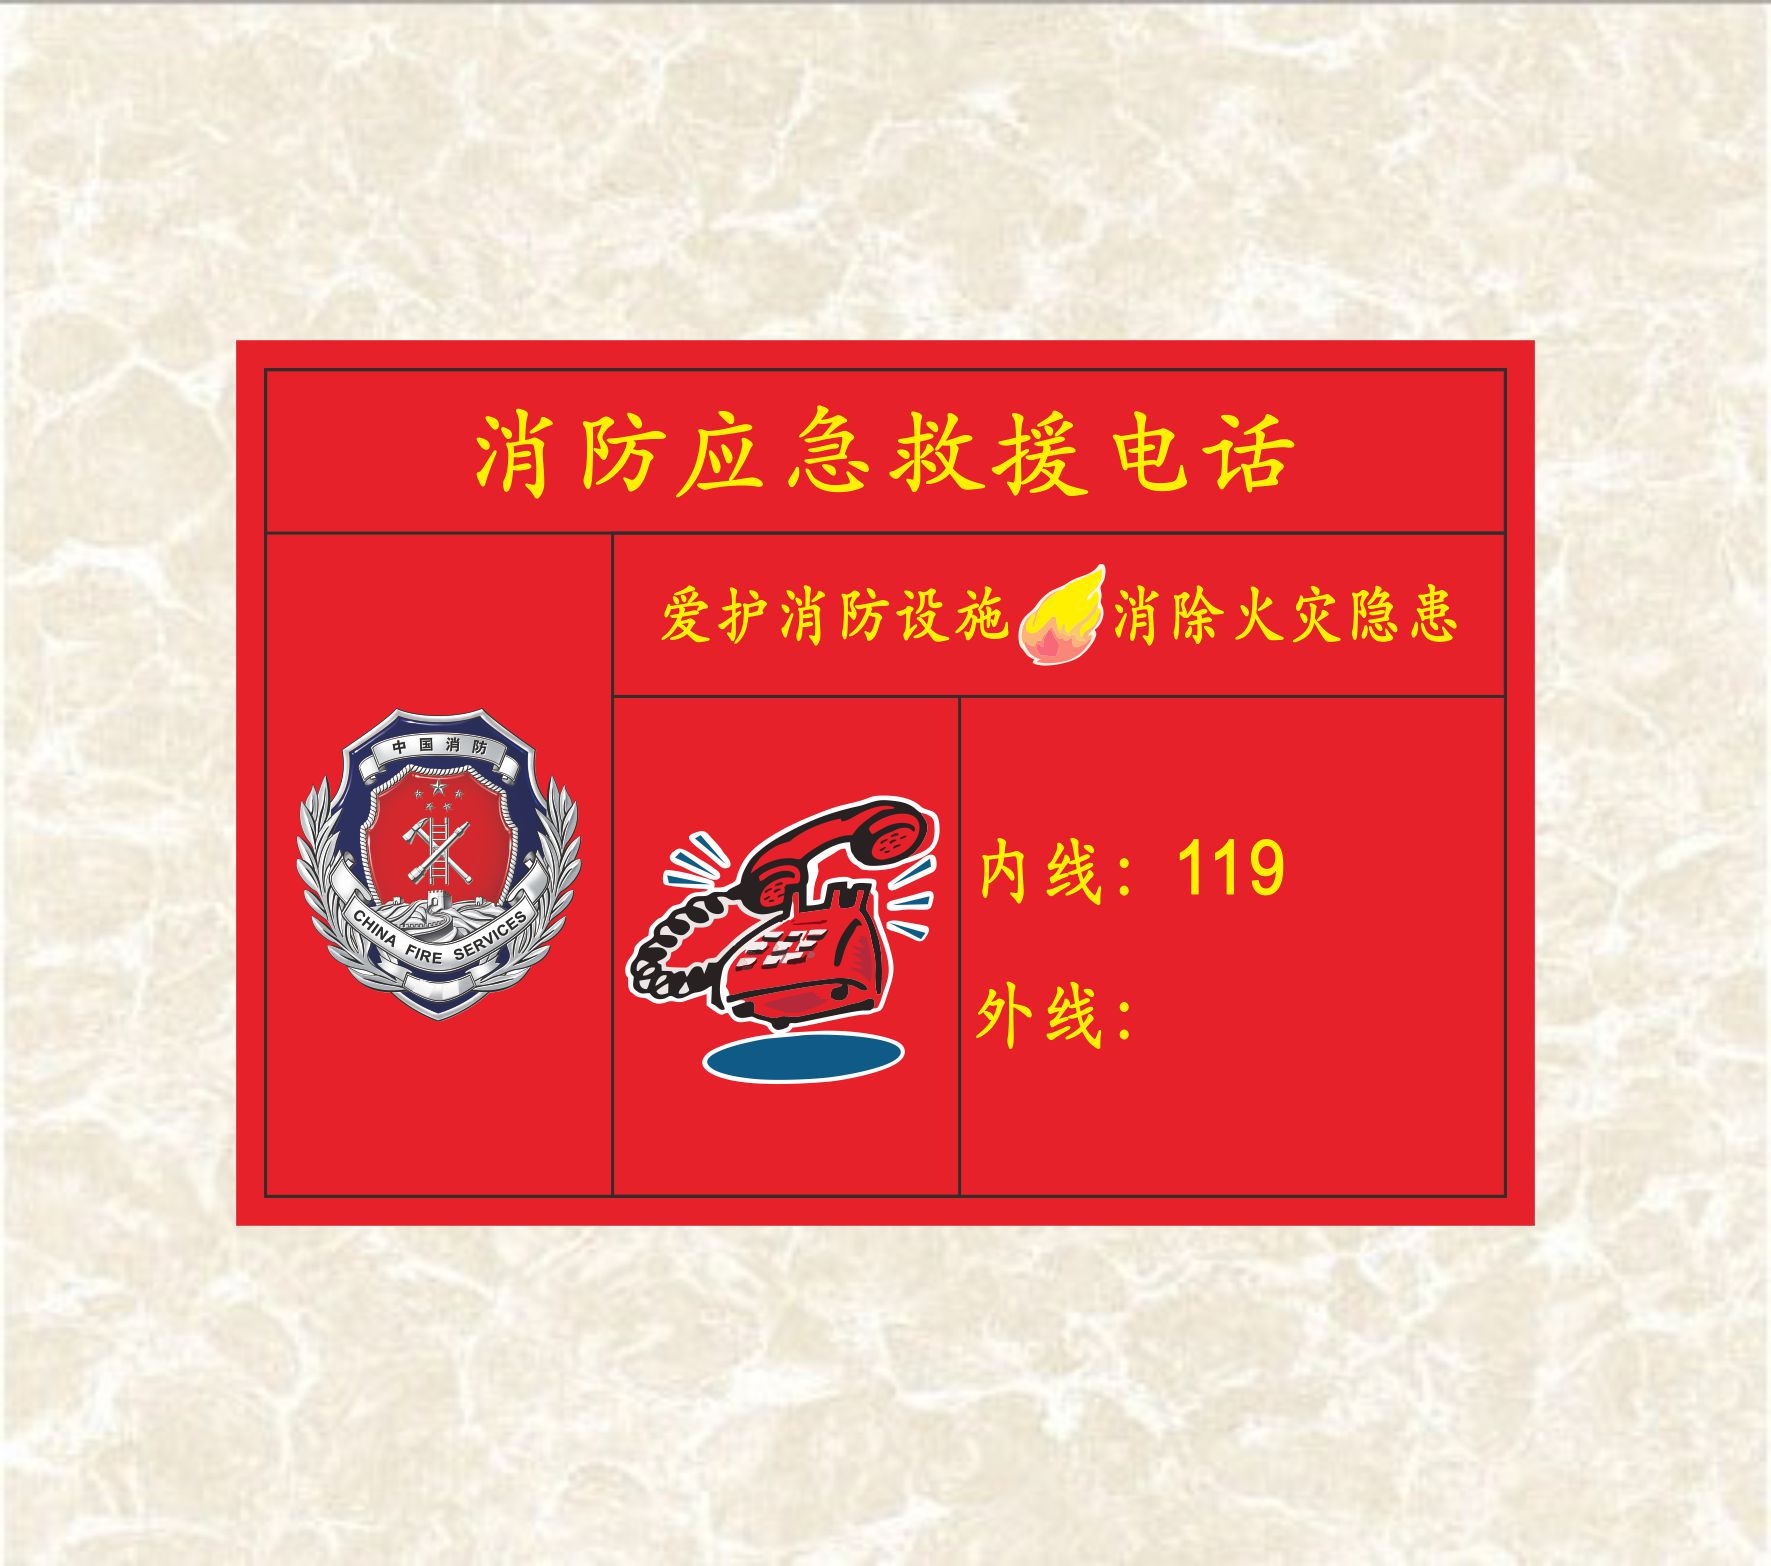 消防应急救援电话标识贴中国消防徽标爱护消防设施消除火灾隐患火警电话119天然气液化气站紧急救火电话补贴